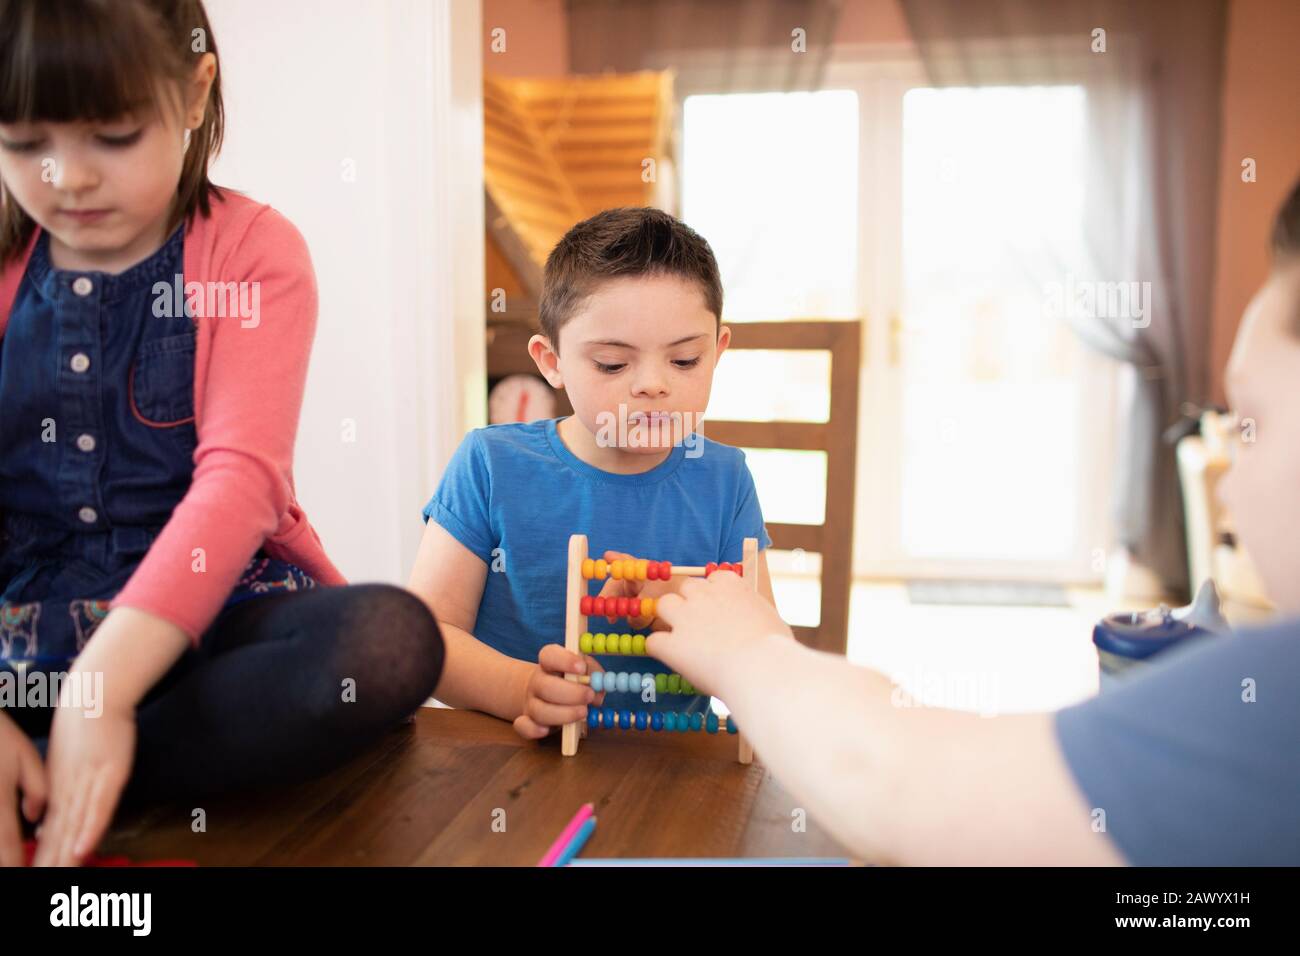 Garçon avec syndrome De Down et frères et sœurs jouant avec le jouet à la table Banque D'Images